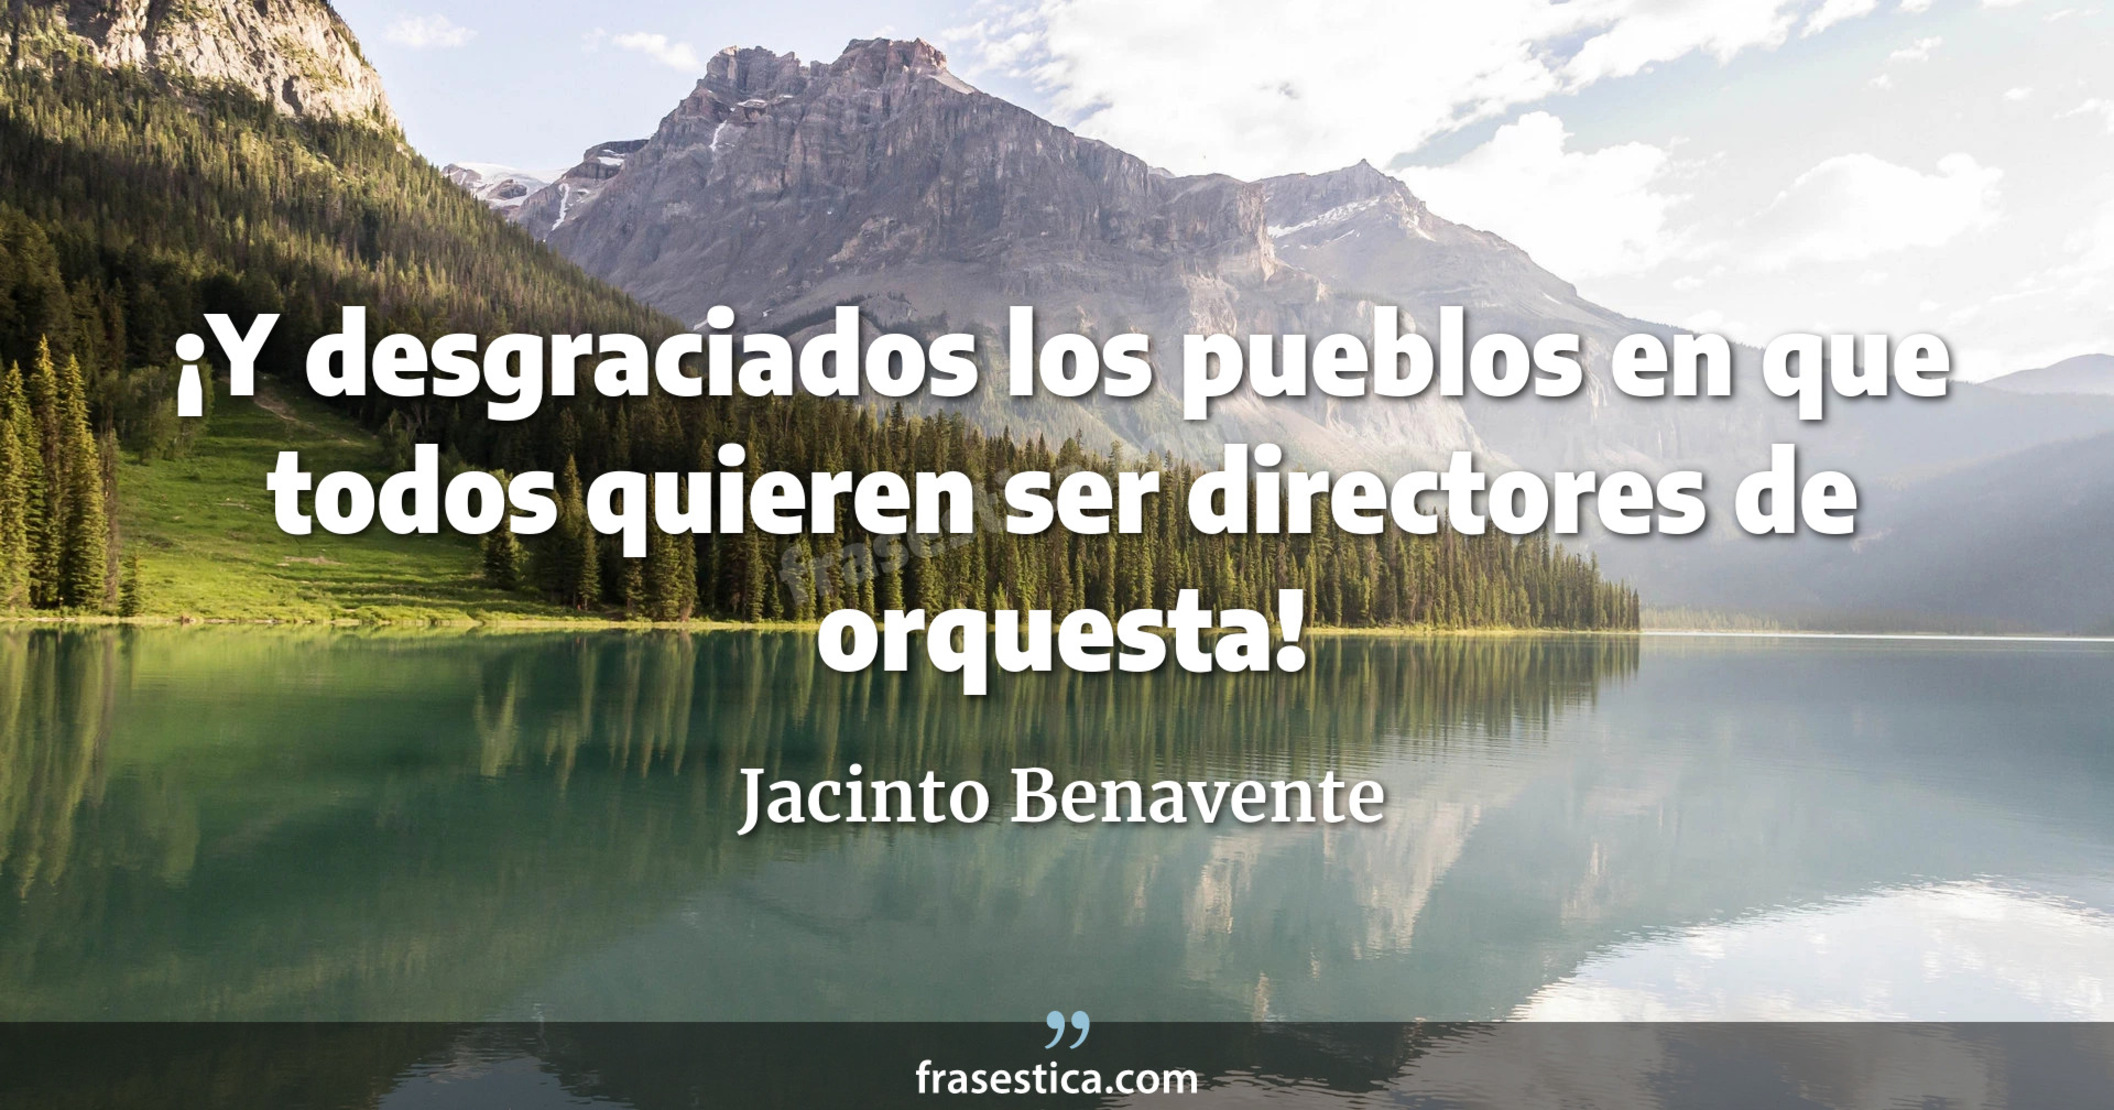 ¡Y desgraciados los pueblos en que todos quieren ser directores de orquesta! - Jacinto Benavente